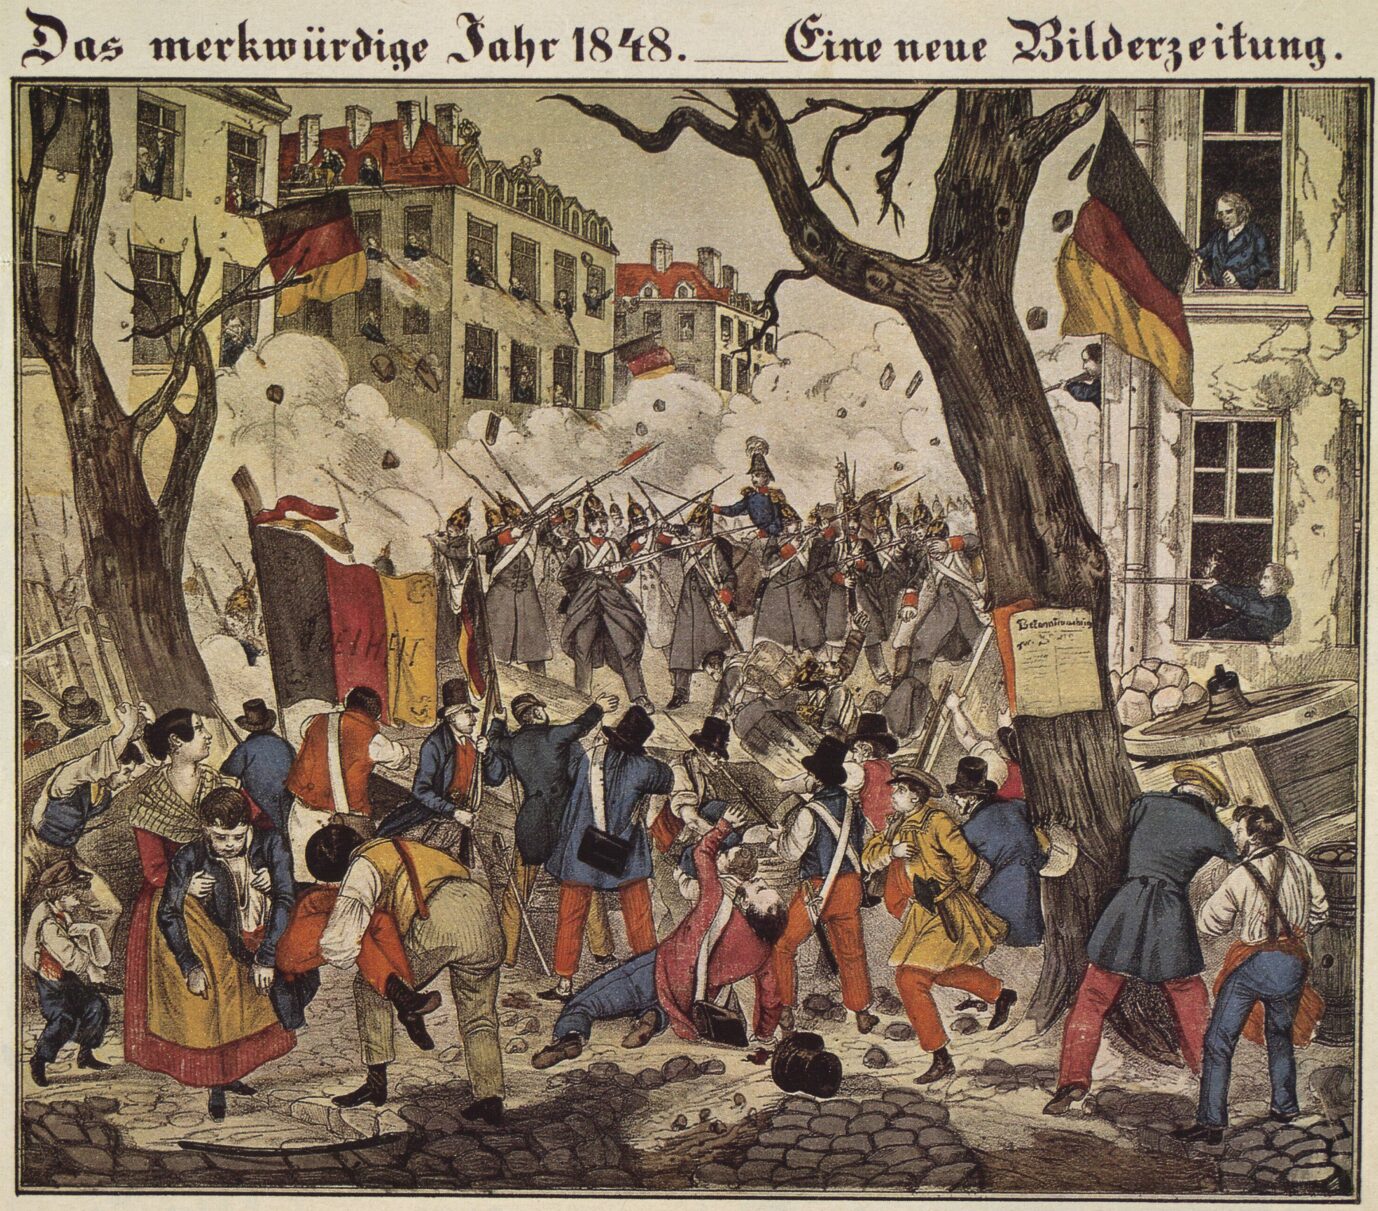 Die Malerei zeigt Kämpfe zwischen Soldaten und Demonstranten bei der Revolution von 1848.